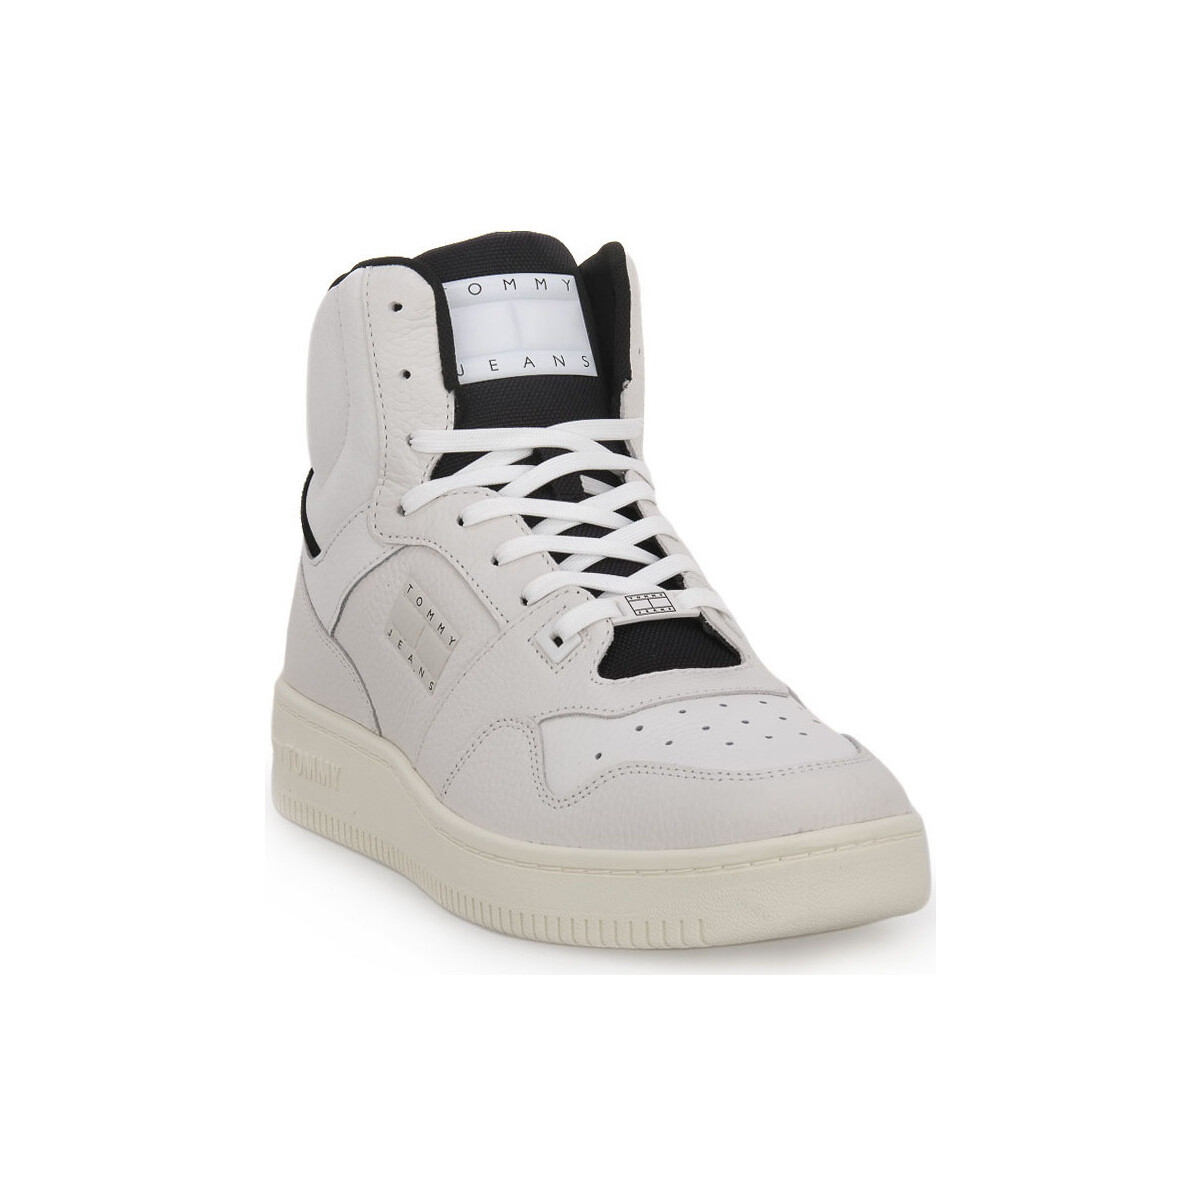 Παπούτσια Άνδρας Sneakers Tommy Hilfiger YBL BASKET MID Άσπρο